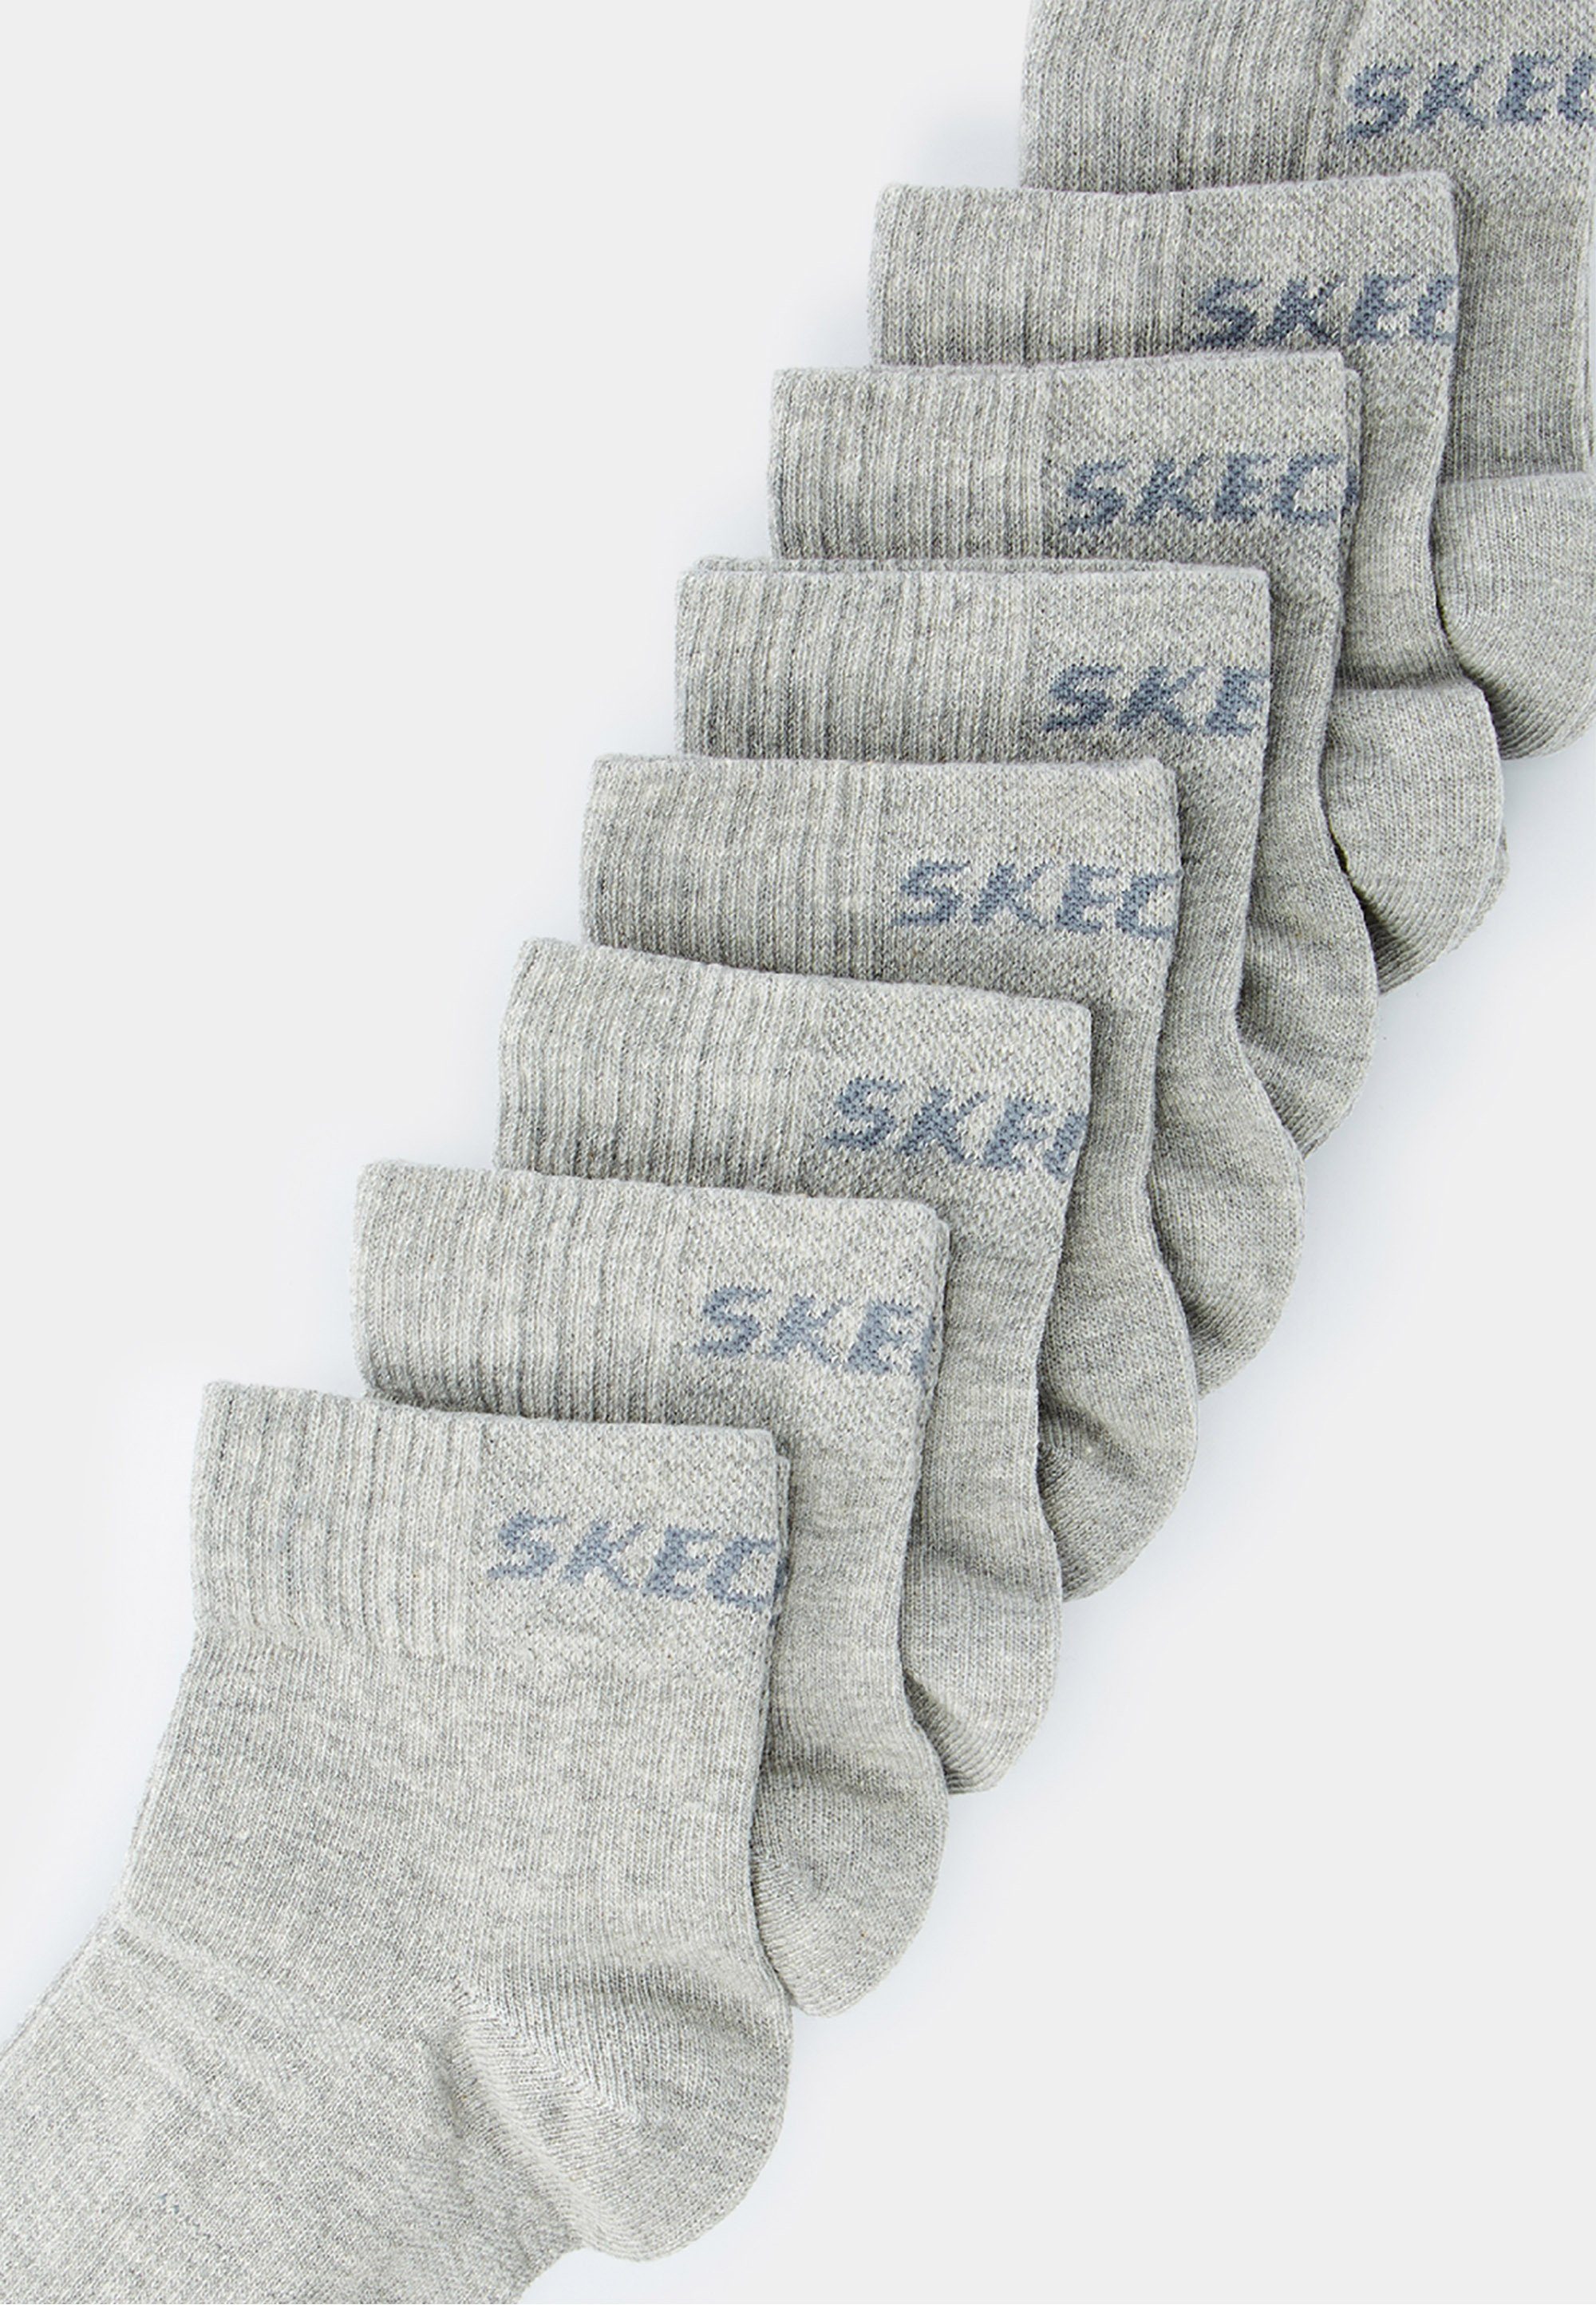 Skechers Socken (8-Paar) im 8er-Pack mit Markenschriftzug meliert schickem grau